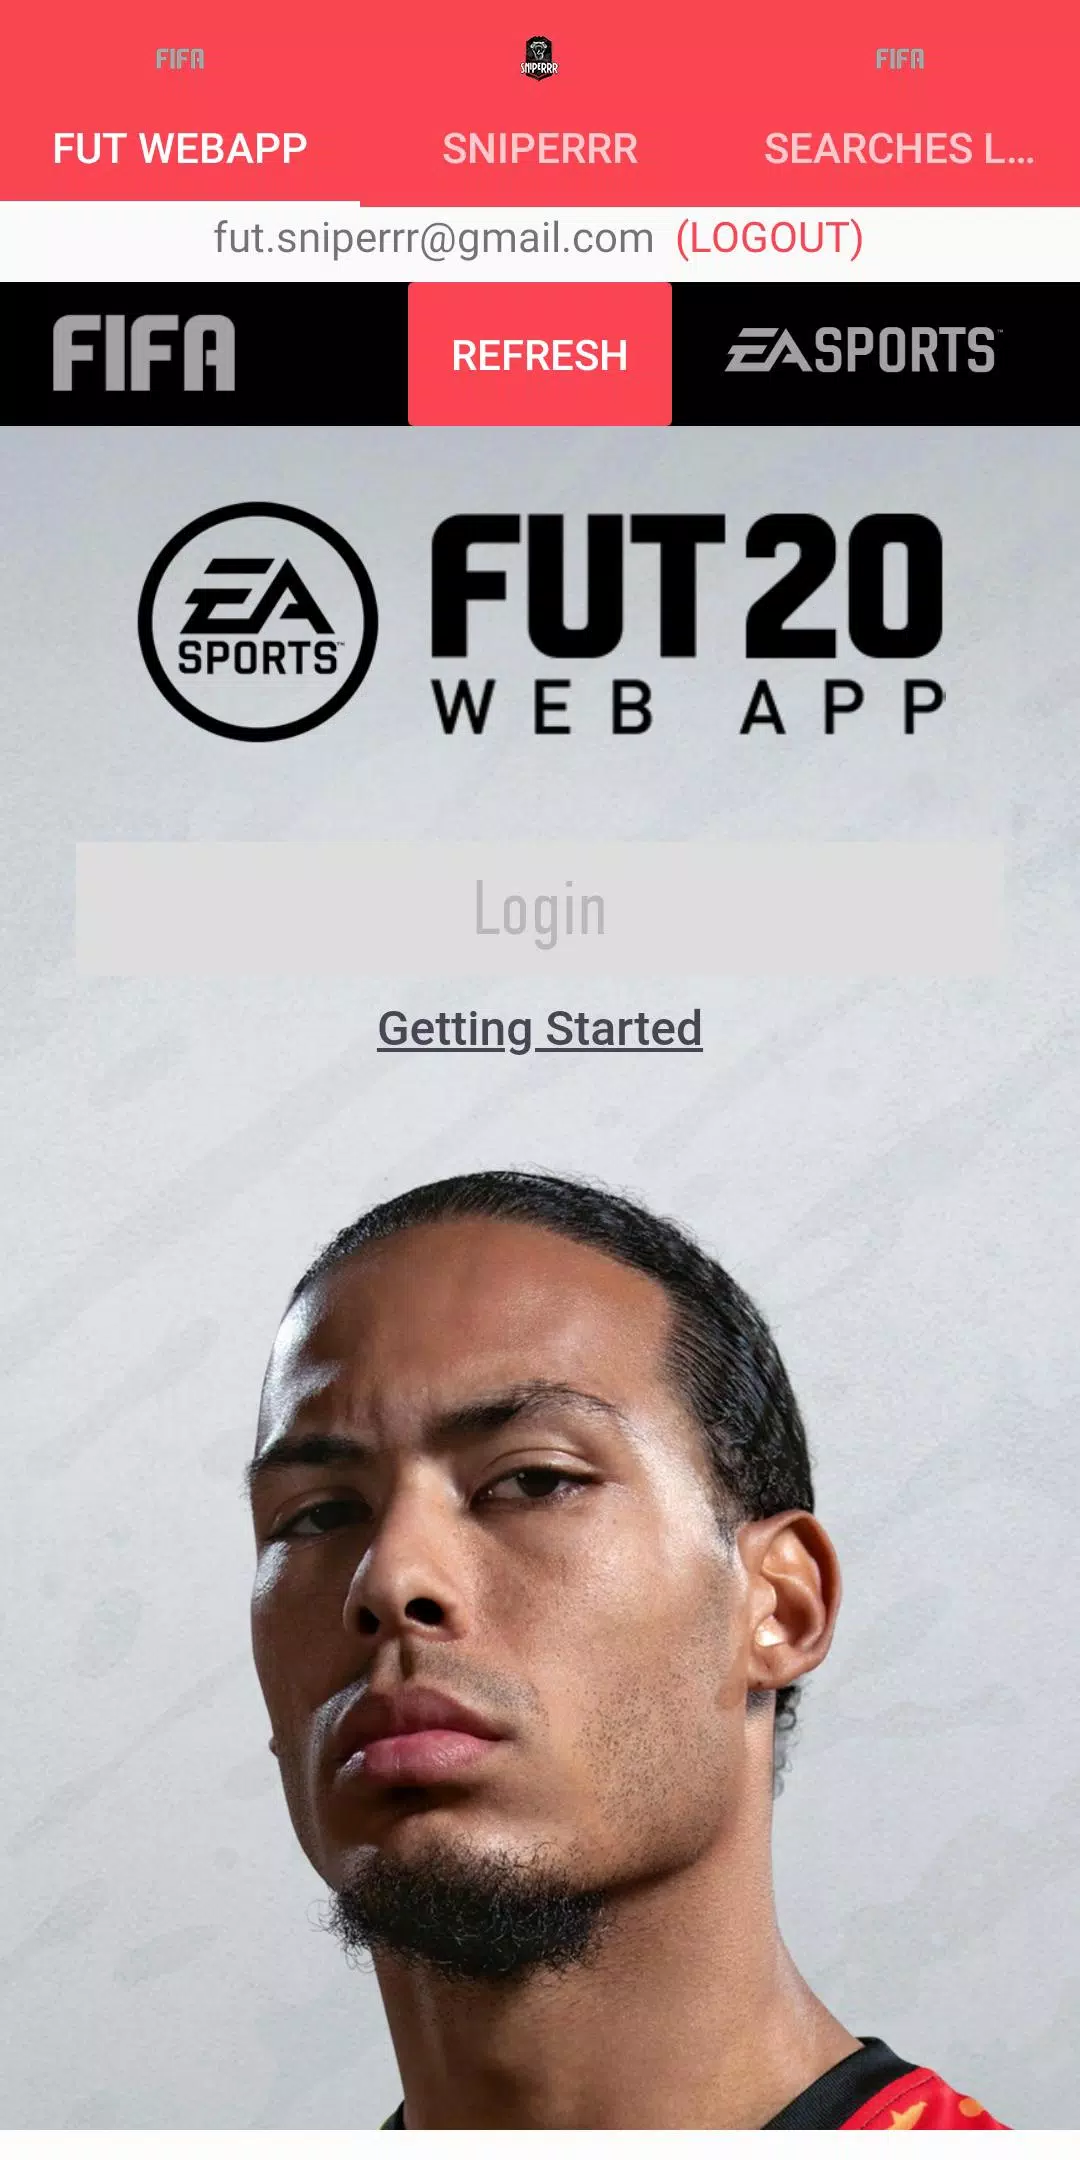 FIFA 22 Web App Autobuyer - FIFA 22 Web App Autobuyer